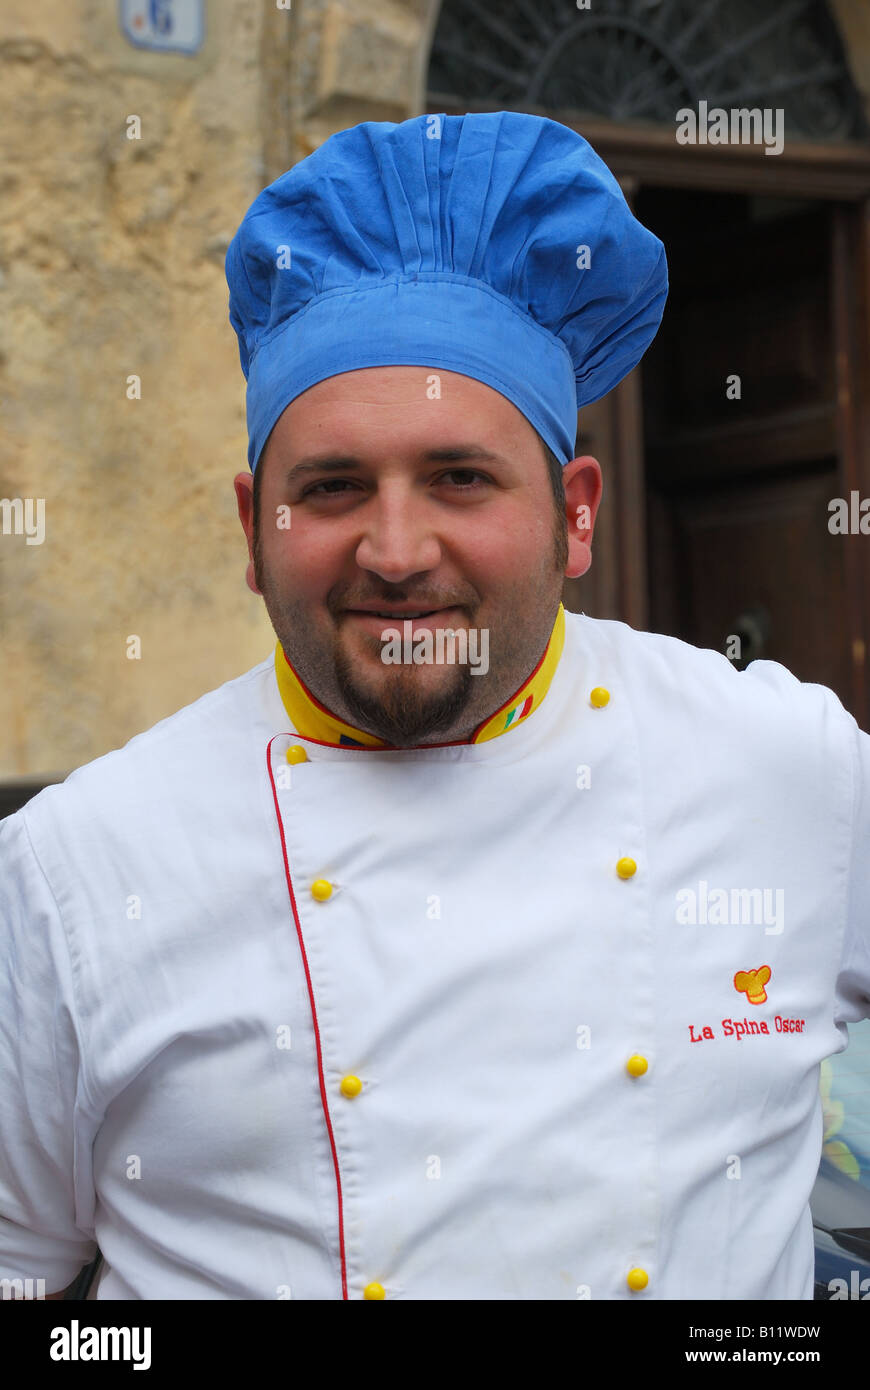 Male chef in uniform, Piazza Amerina, Citta di Enna, Enna Province, Sicily, Italy Stock Photo